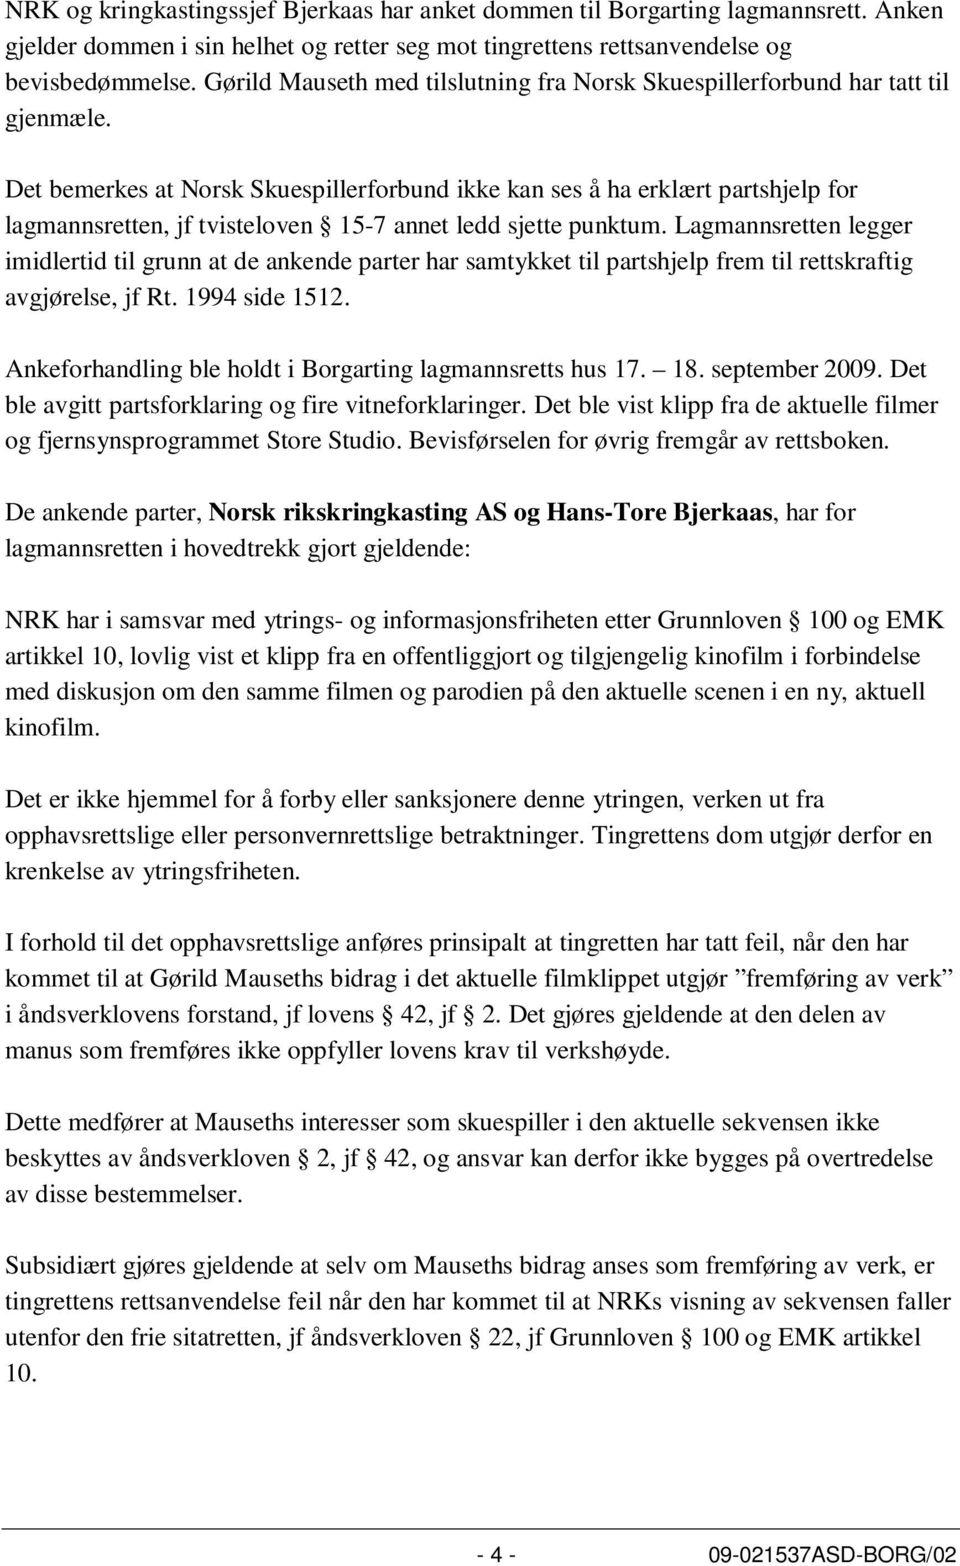 Det bemerkes at Norsk Skuespillerforbund ikke kan ses å ha erklært partshjelp for lagmannsretten, jf tvisteloven 15-7 annet ledd sjette punktum.